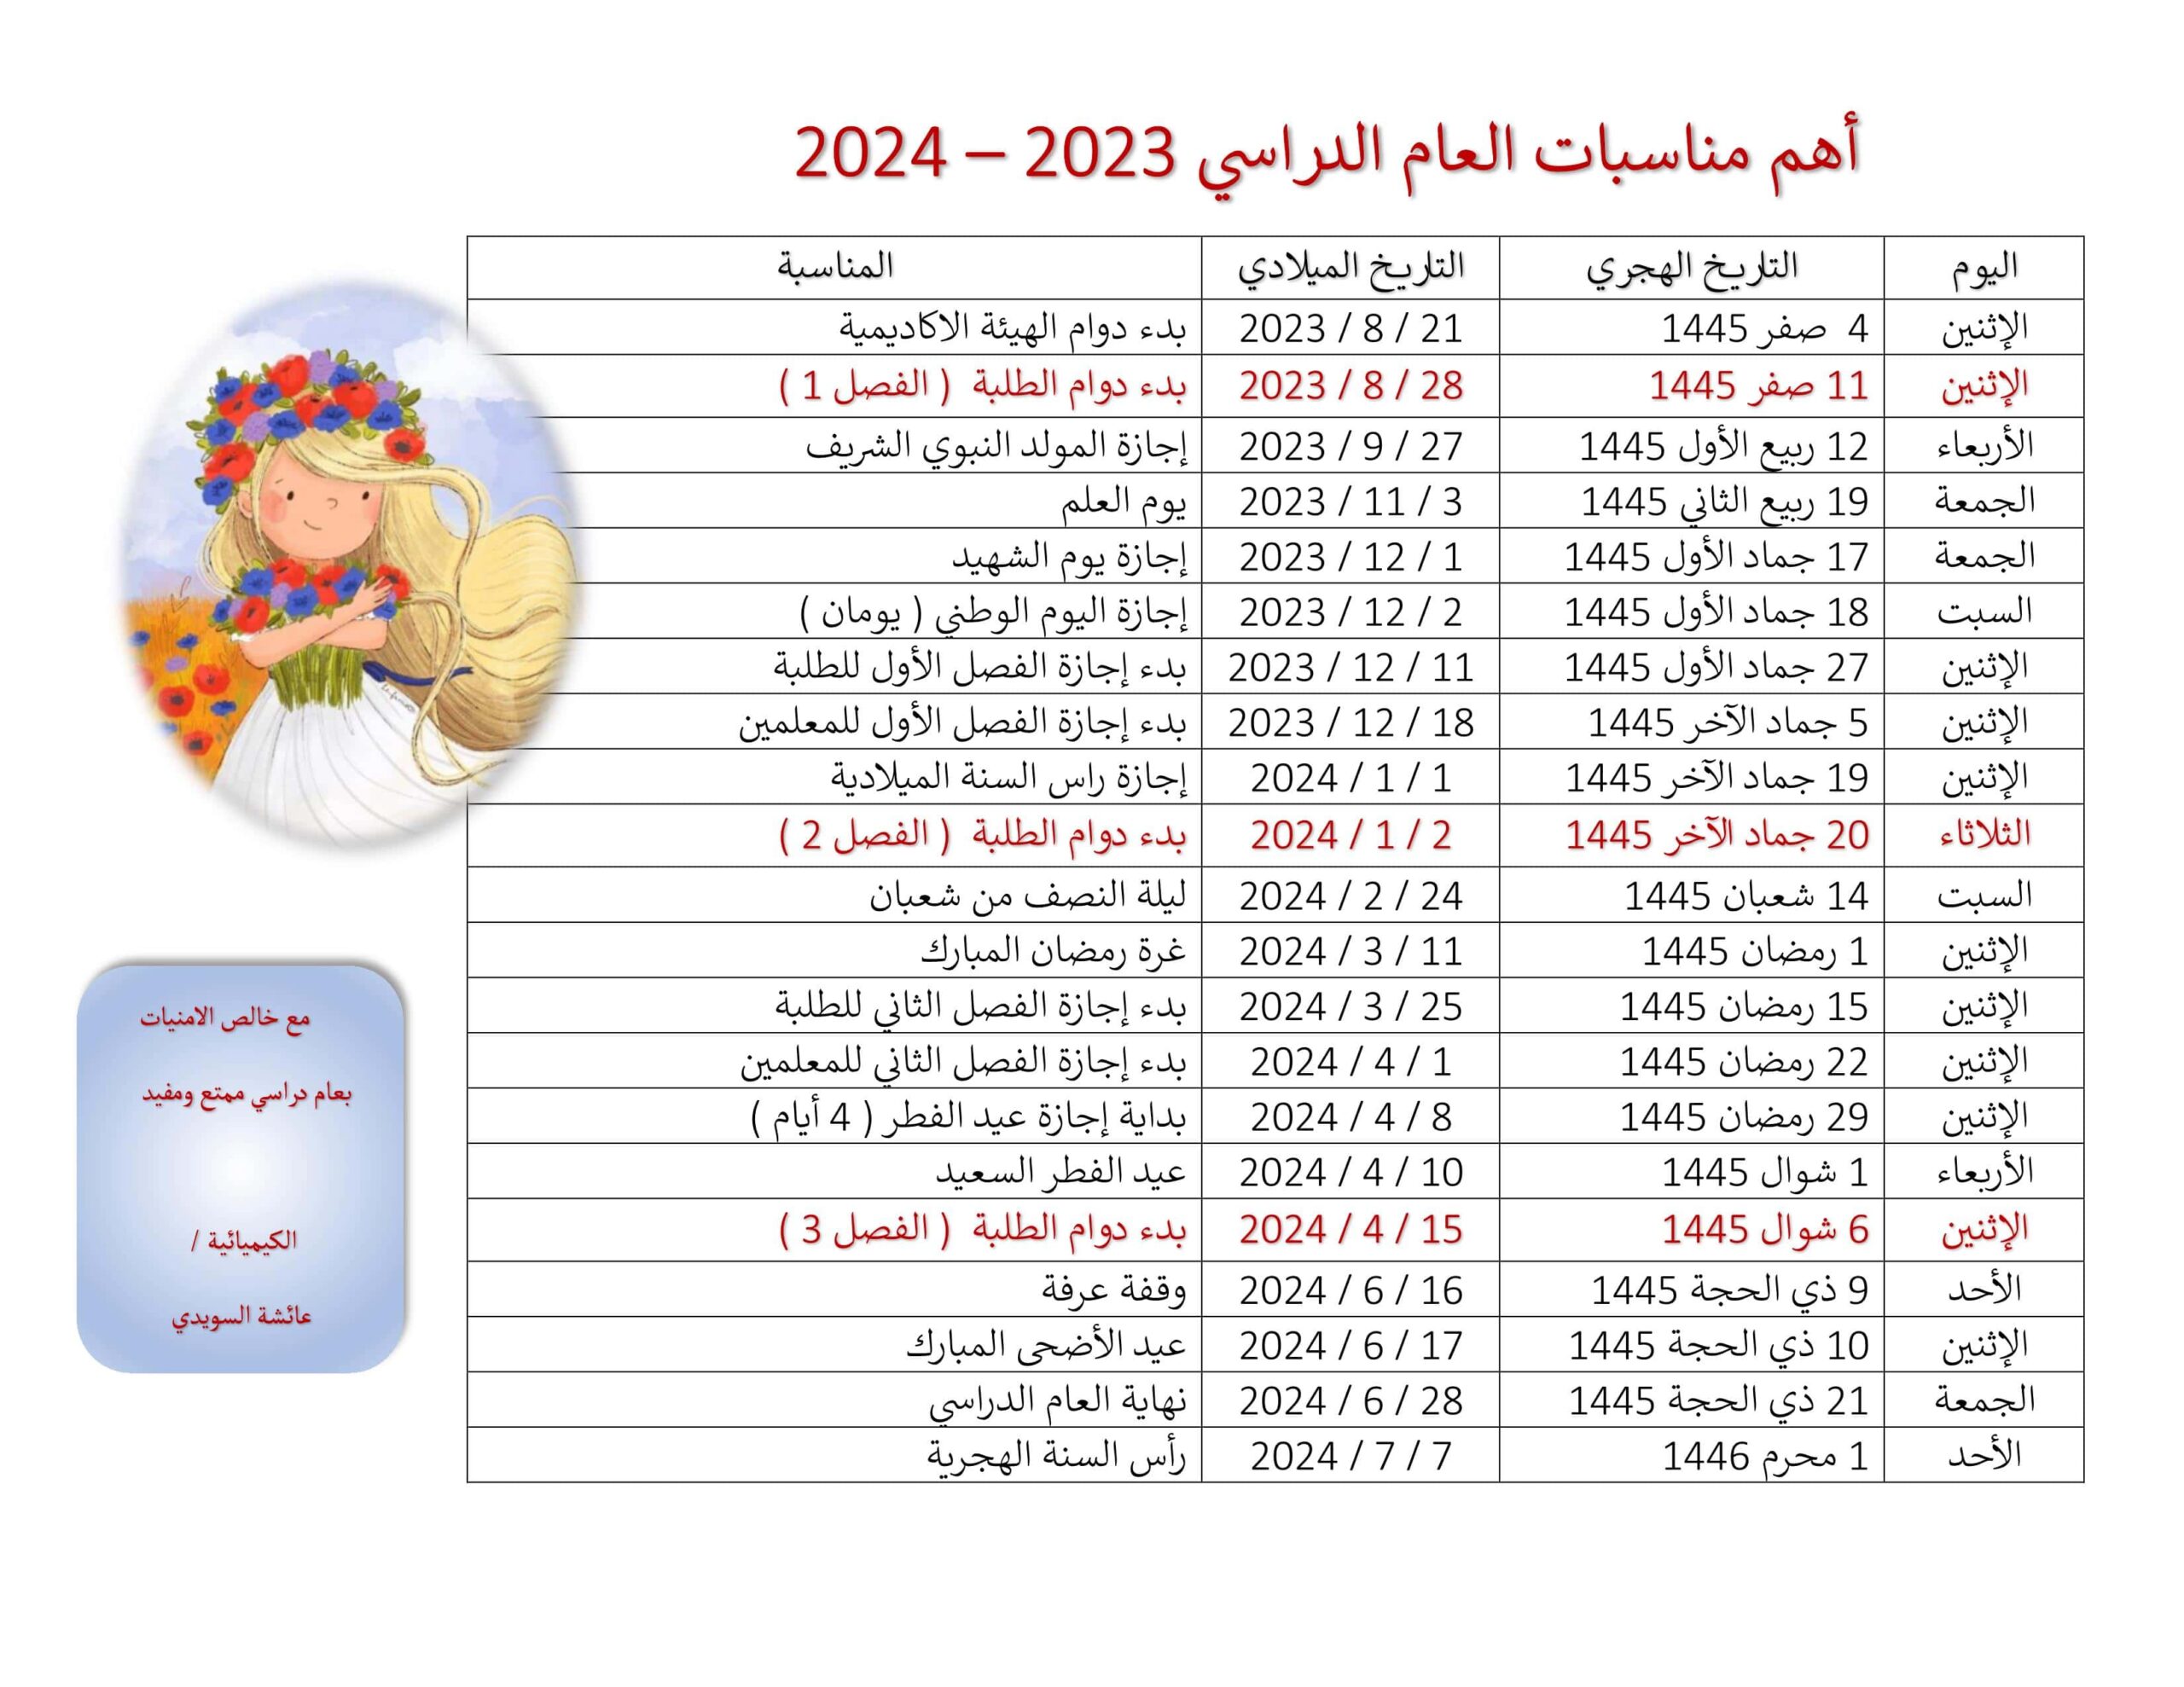 أهم مناسبات العام الدراسي 2023 - 2024